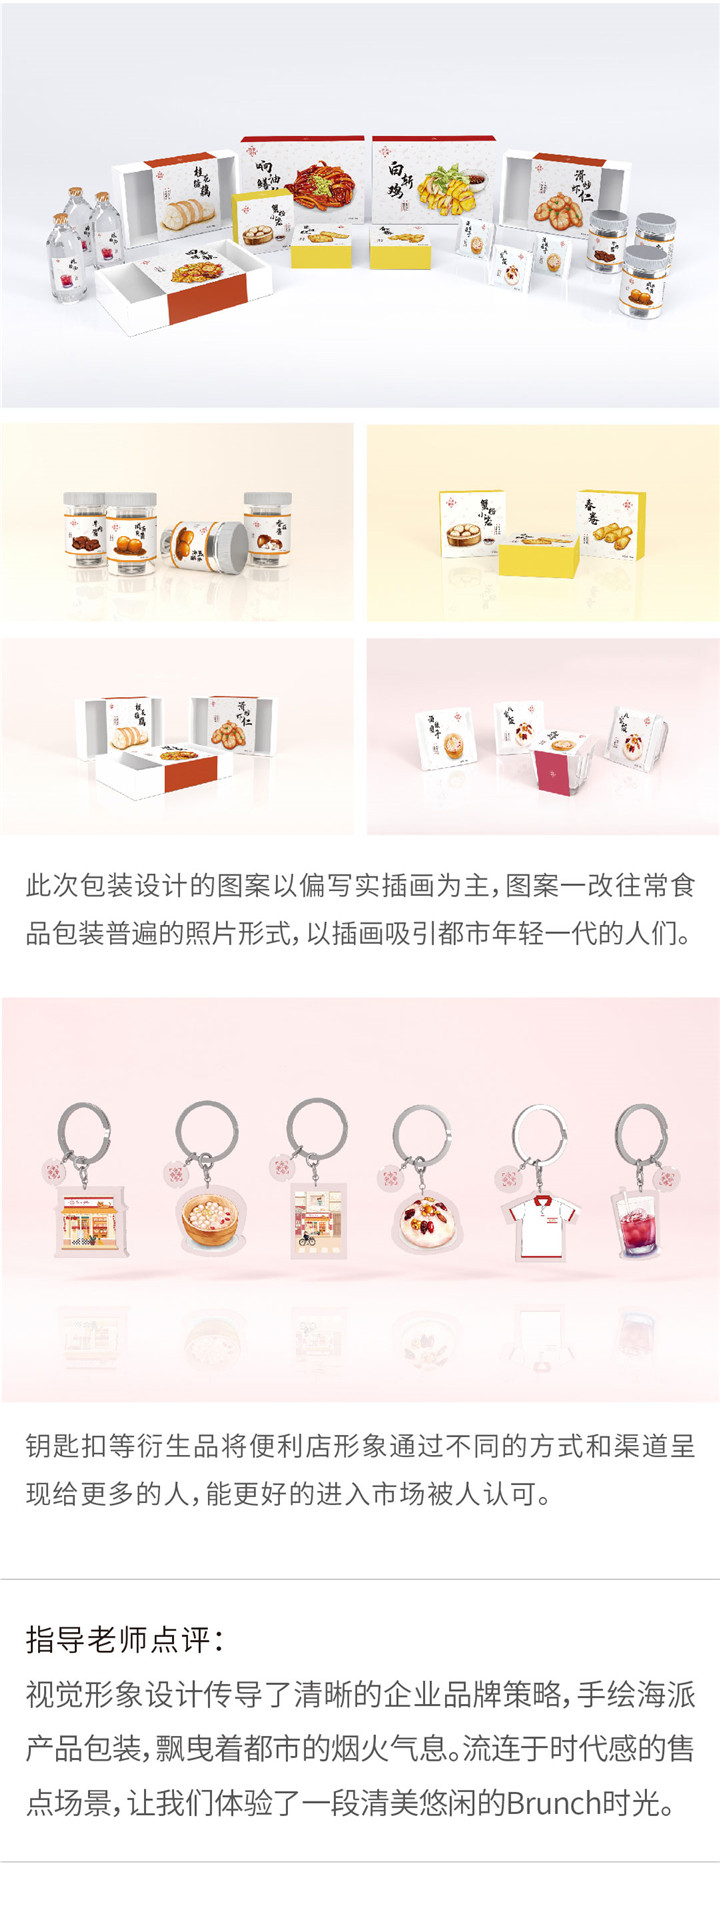 视觉传达——清美便利店品牌视觉形象设计（吴）-设计中国